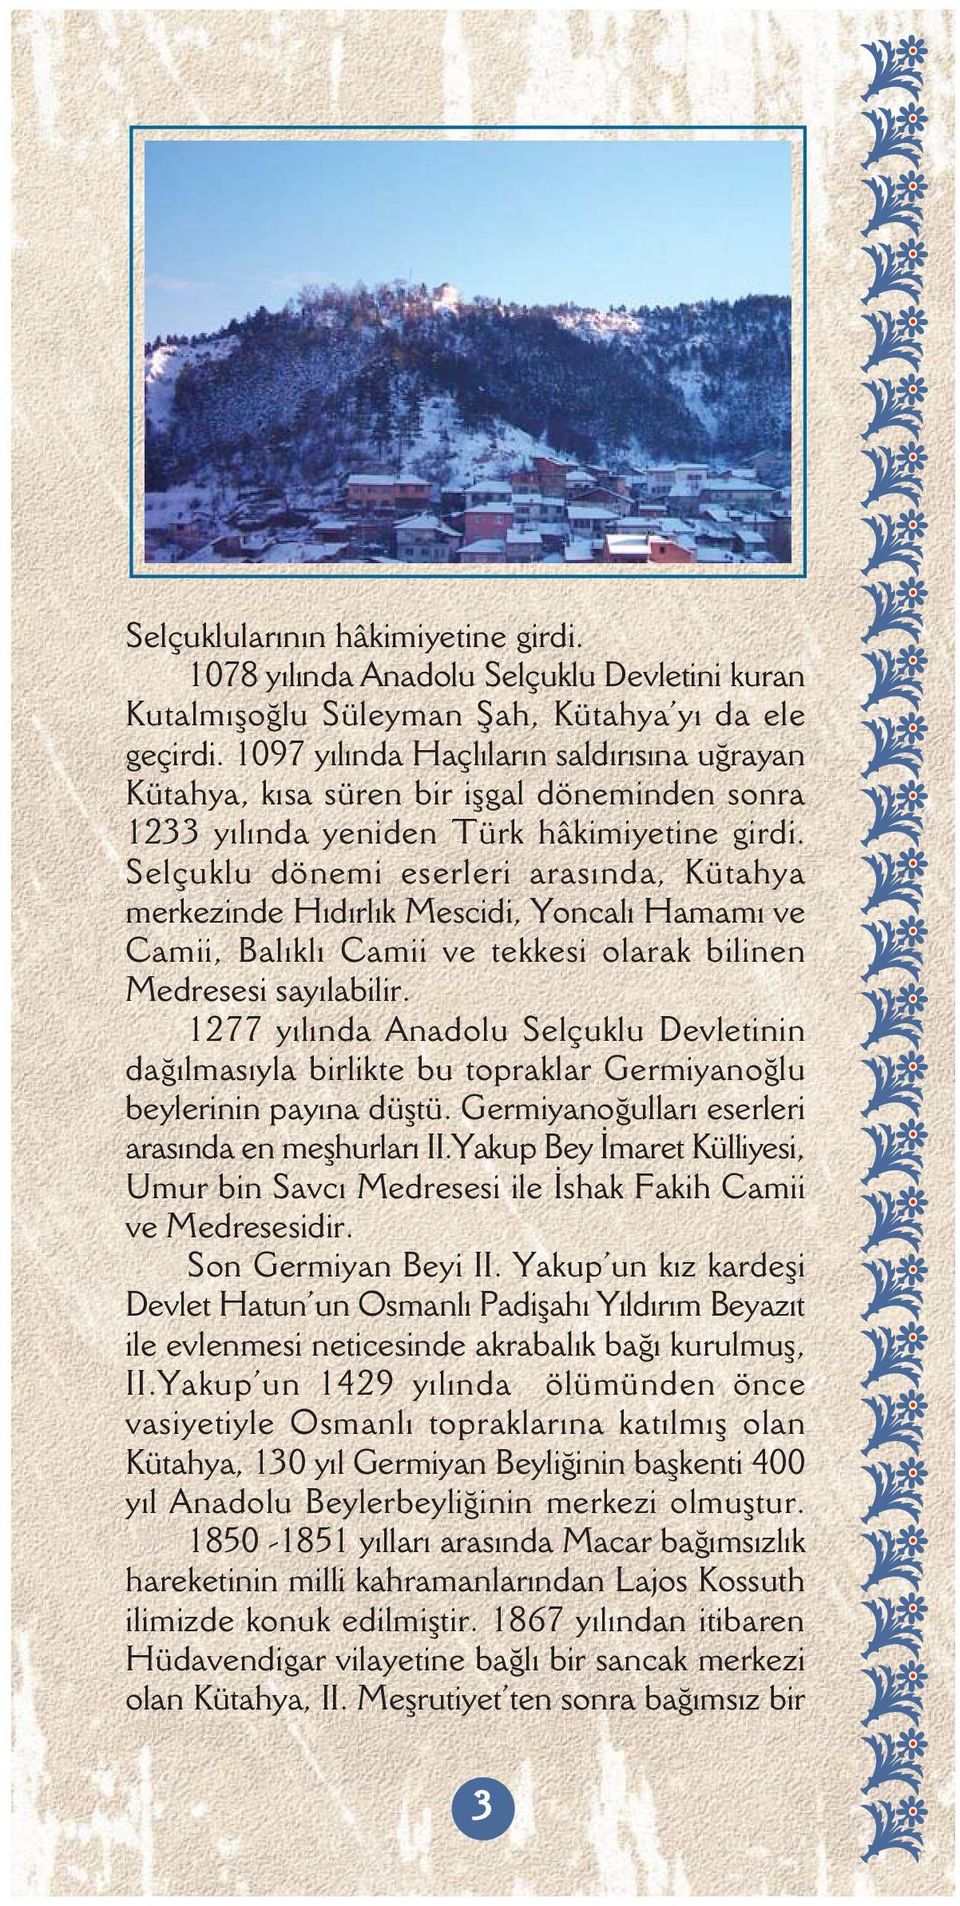 Selçuklu dönemi eserleri arasýnda, Kütahya merkezinde Hýdýrlýk Mescidi, Yoncalý Hamamý ve Camii, Balýklý Camii ve tekkesi olarak bilinen Medresesi sayýlabilir.